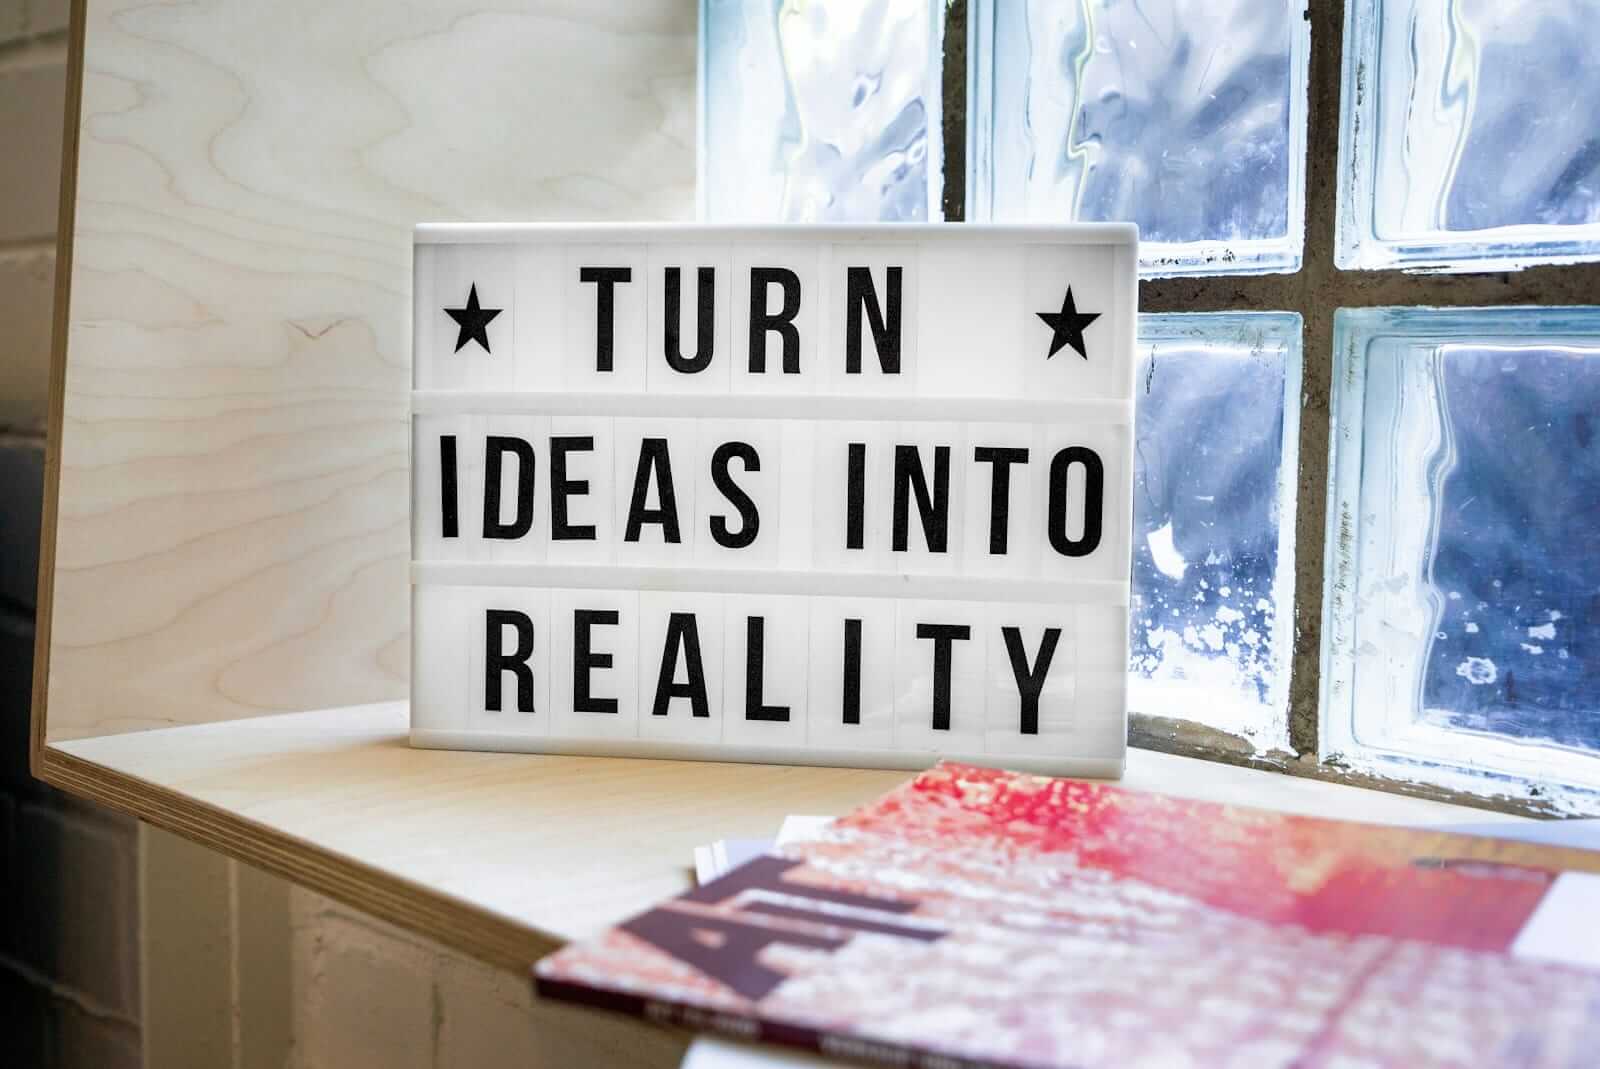 Inspirierendes Zitat auf Leuchtkasten: Ideen in Realität verwandeln.